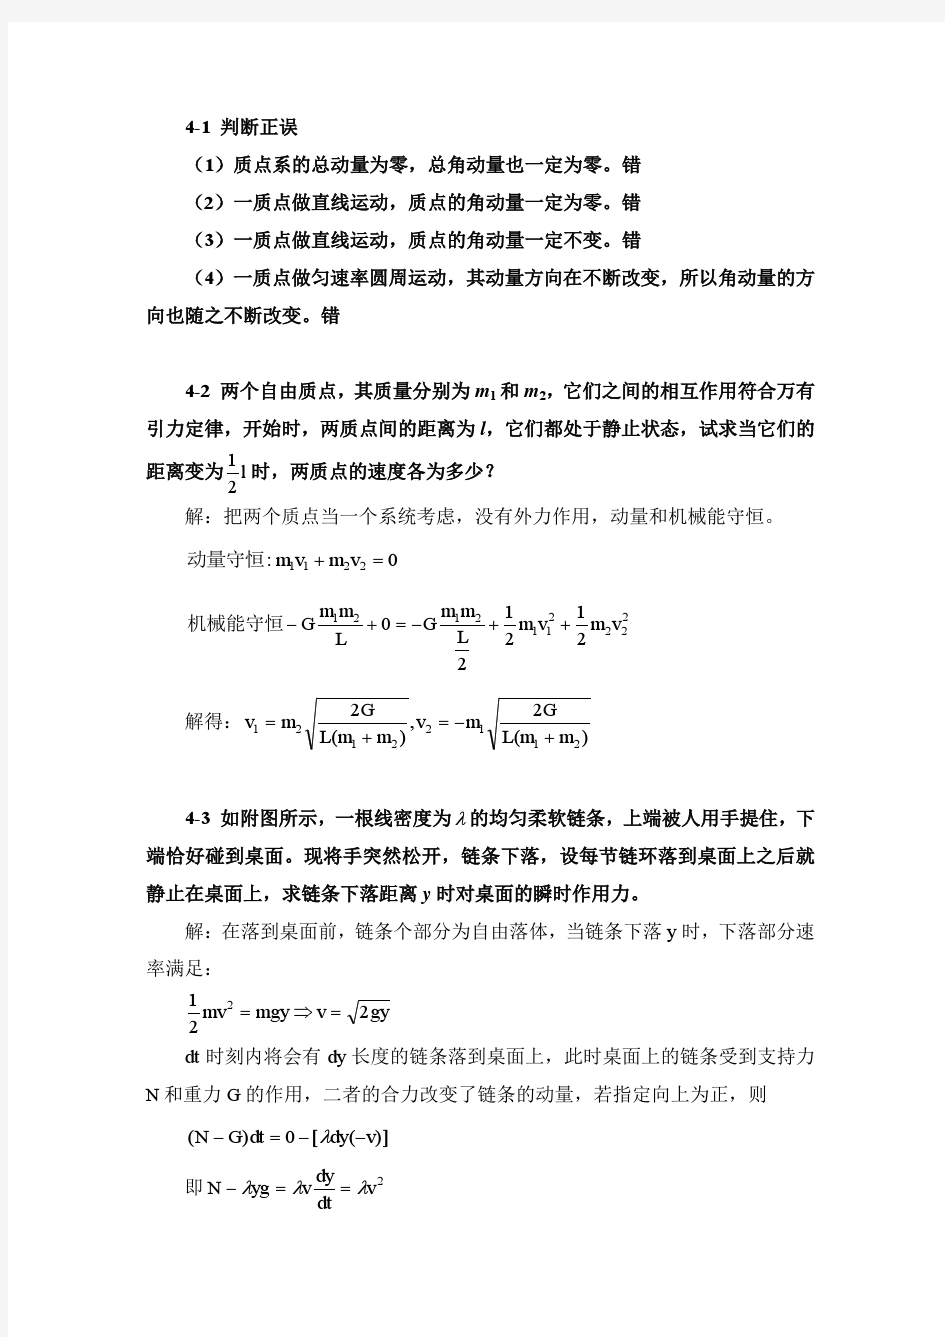 南京信息工程大学 大学物理上册第四章课后习题答案